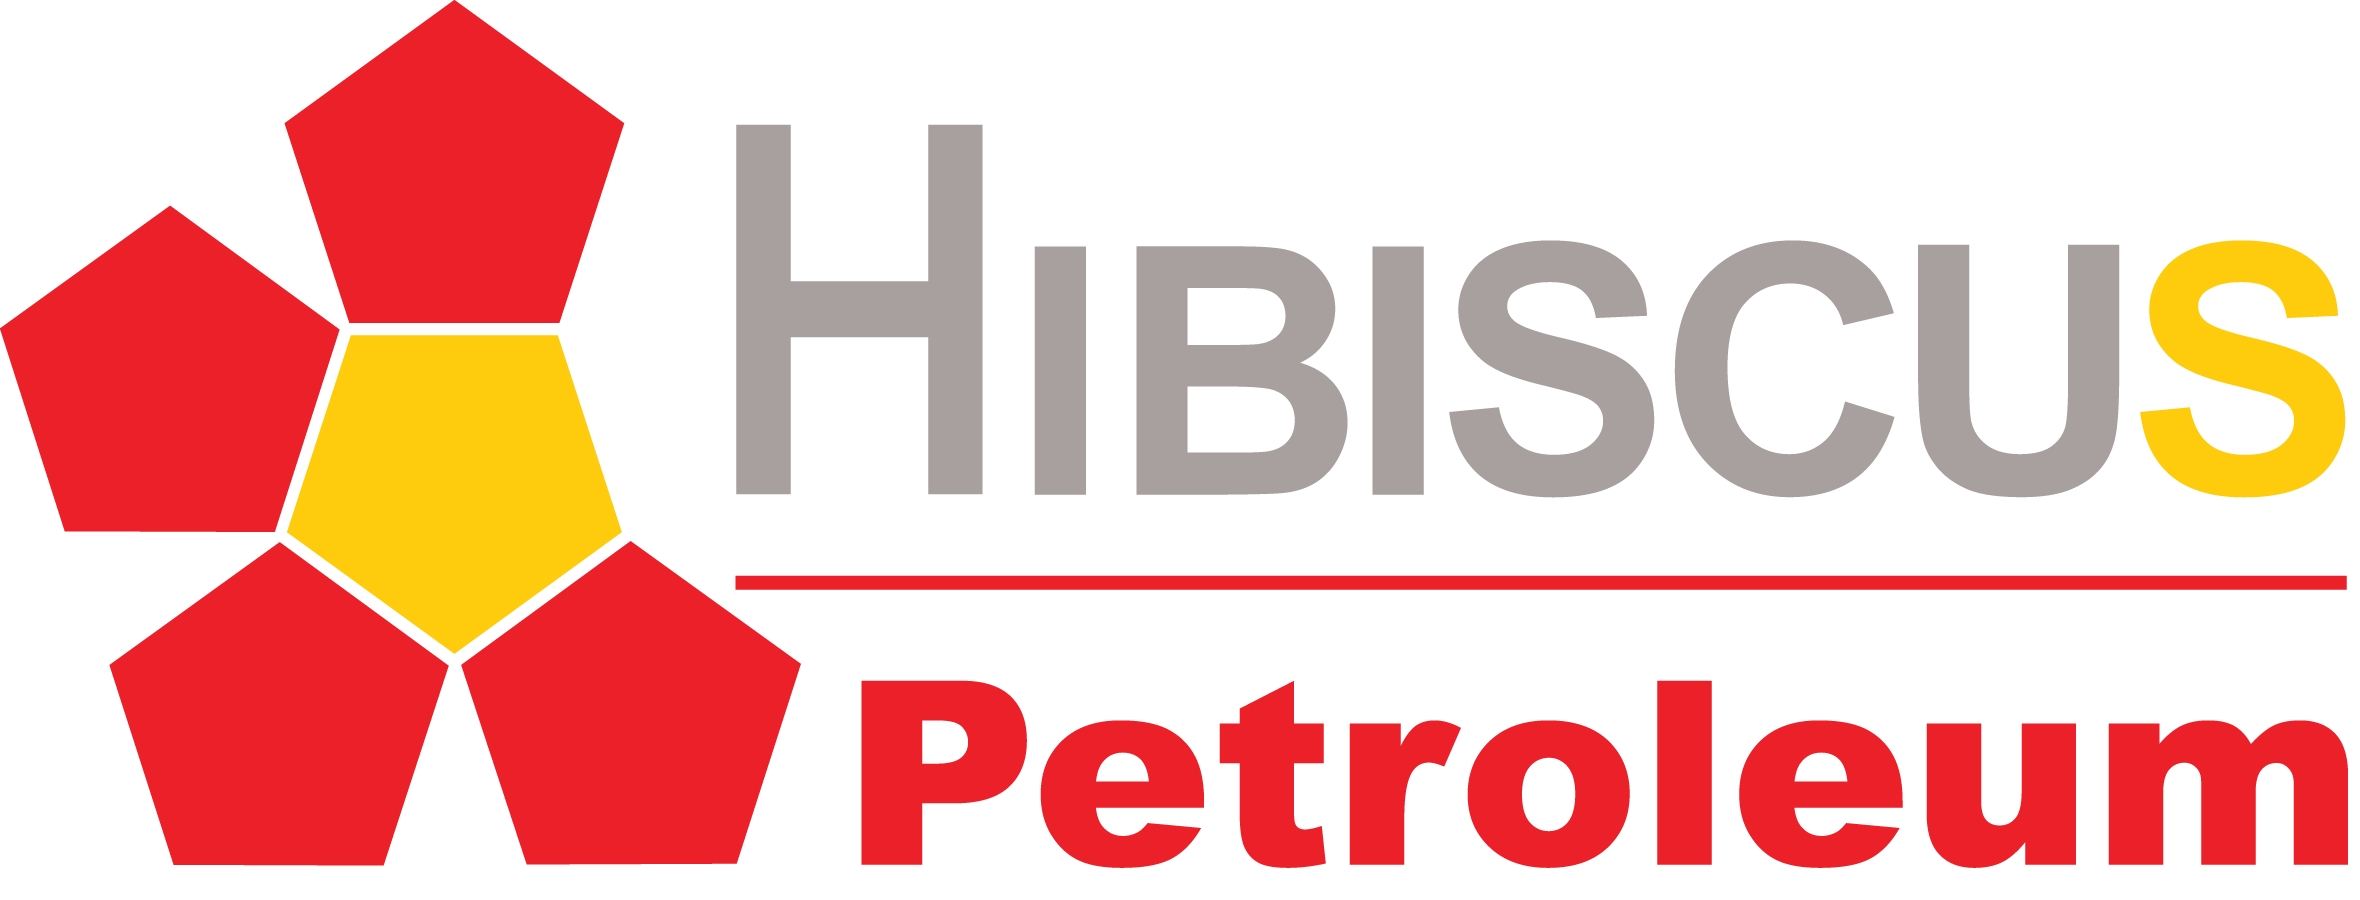 Hibiscus Petroleum Berhad